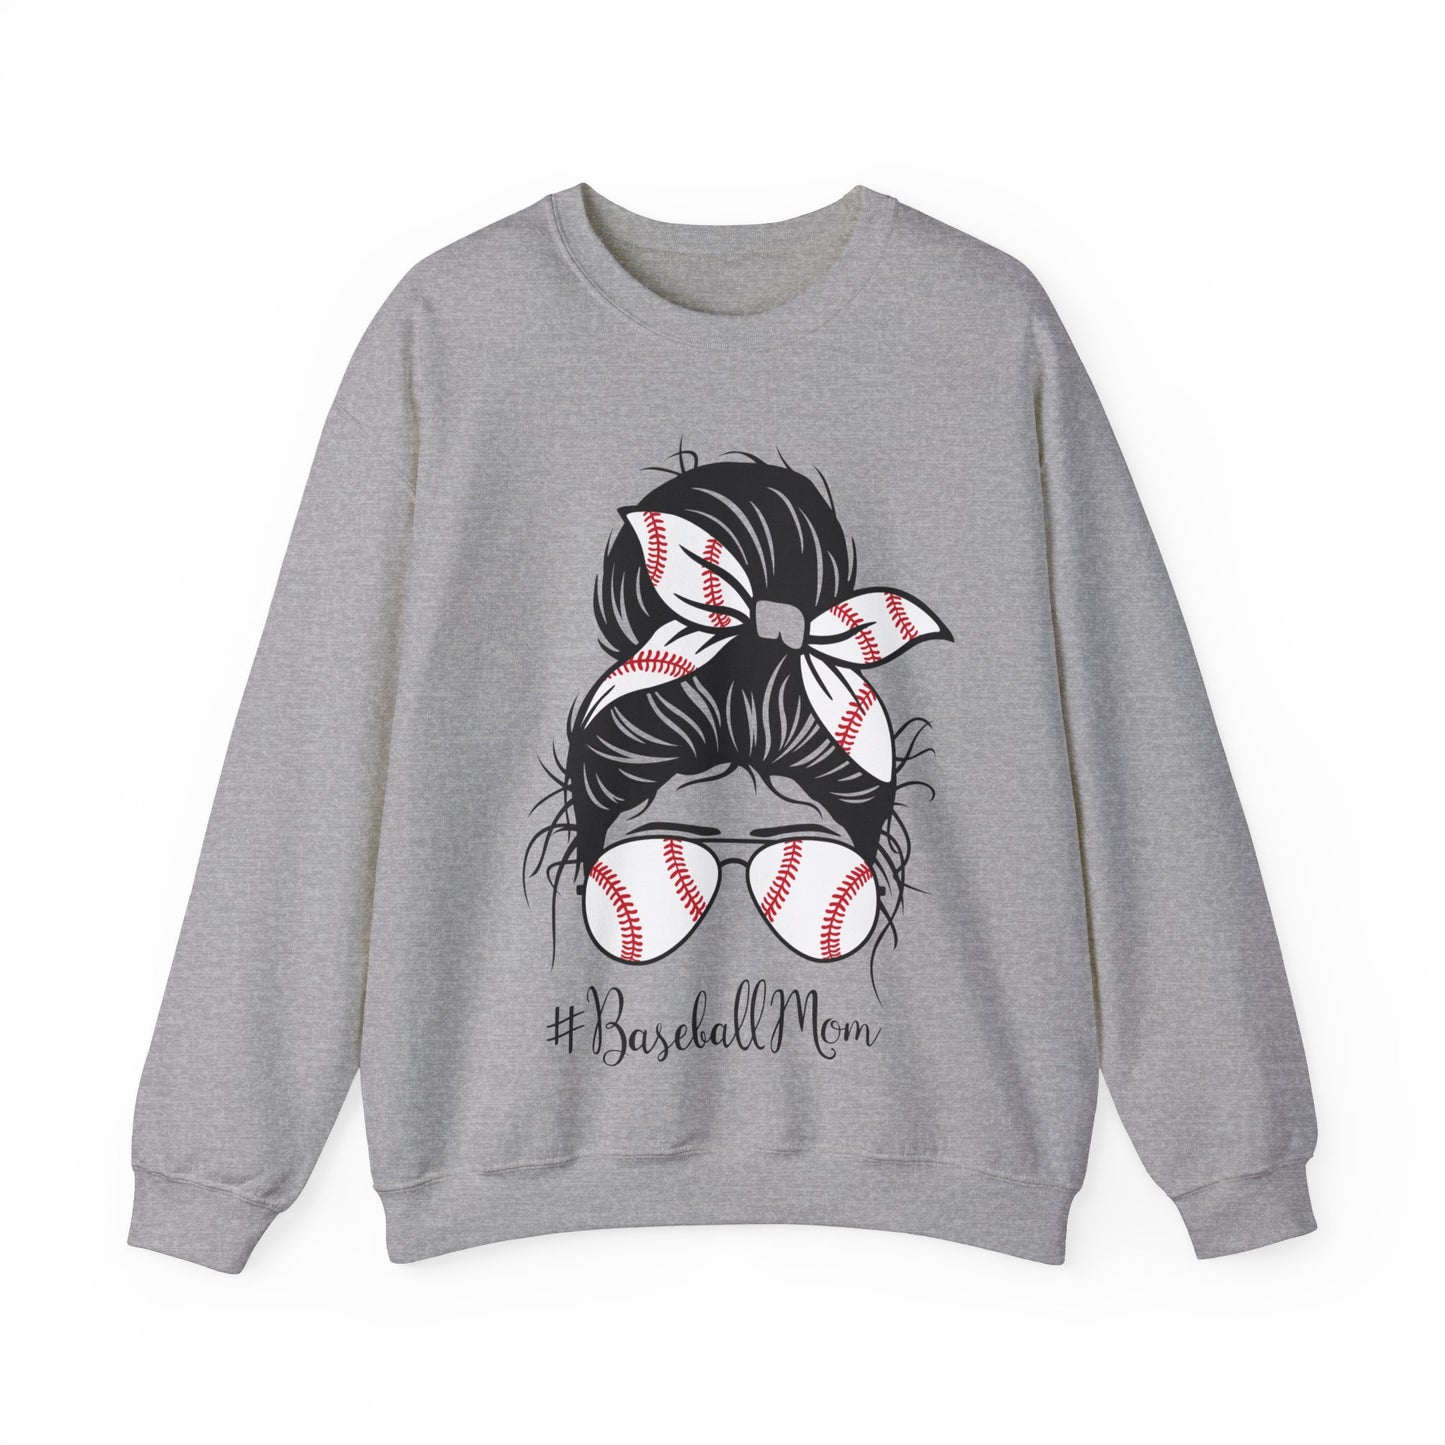 Baseball Mom - Crewneck Sweatshirt